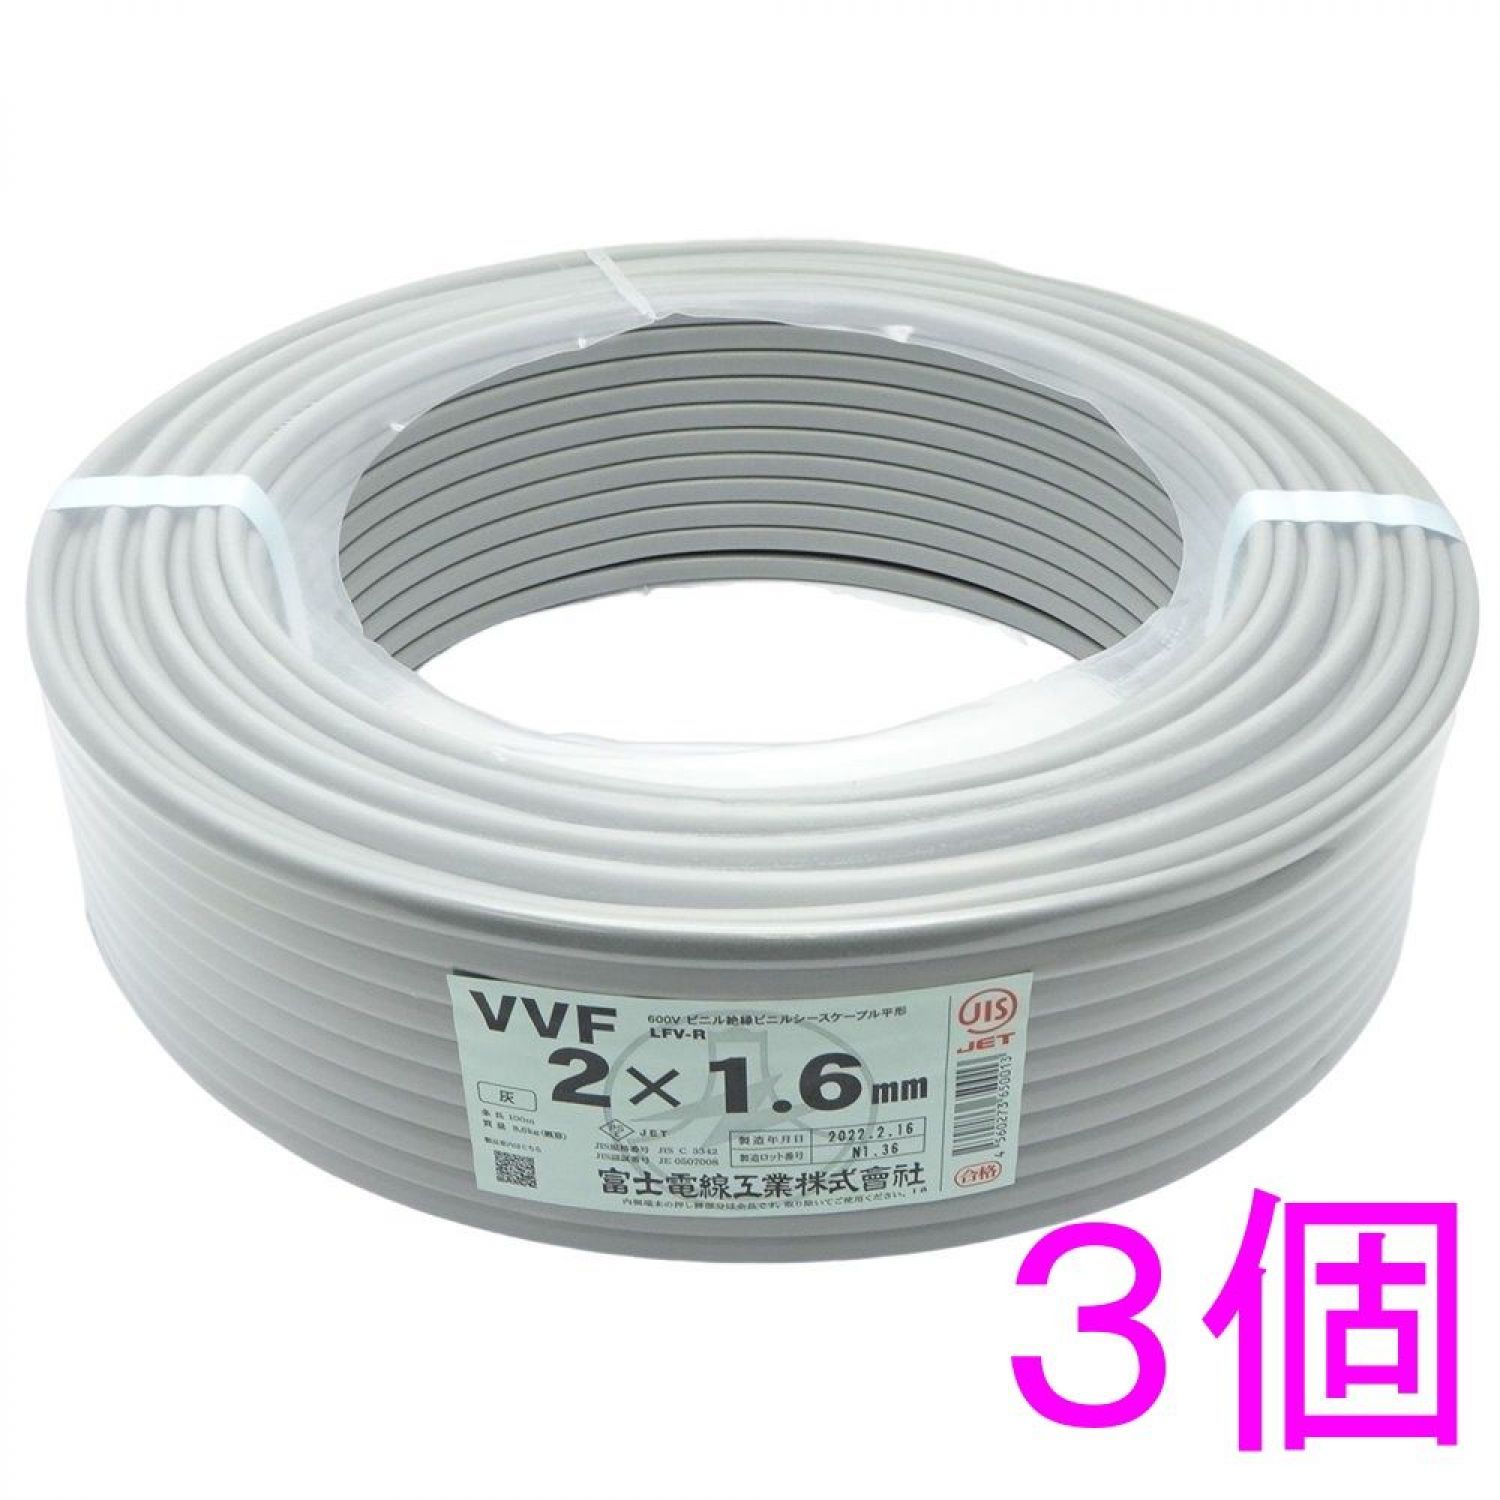 愛知電線 VVFケーブル 1.6mm×3芯 100m巻 型式： VVF1.6mm×3C×100m